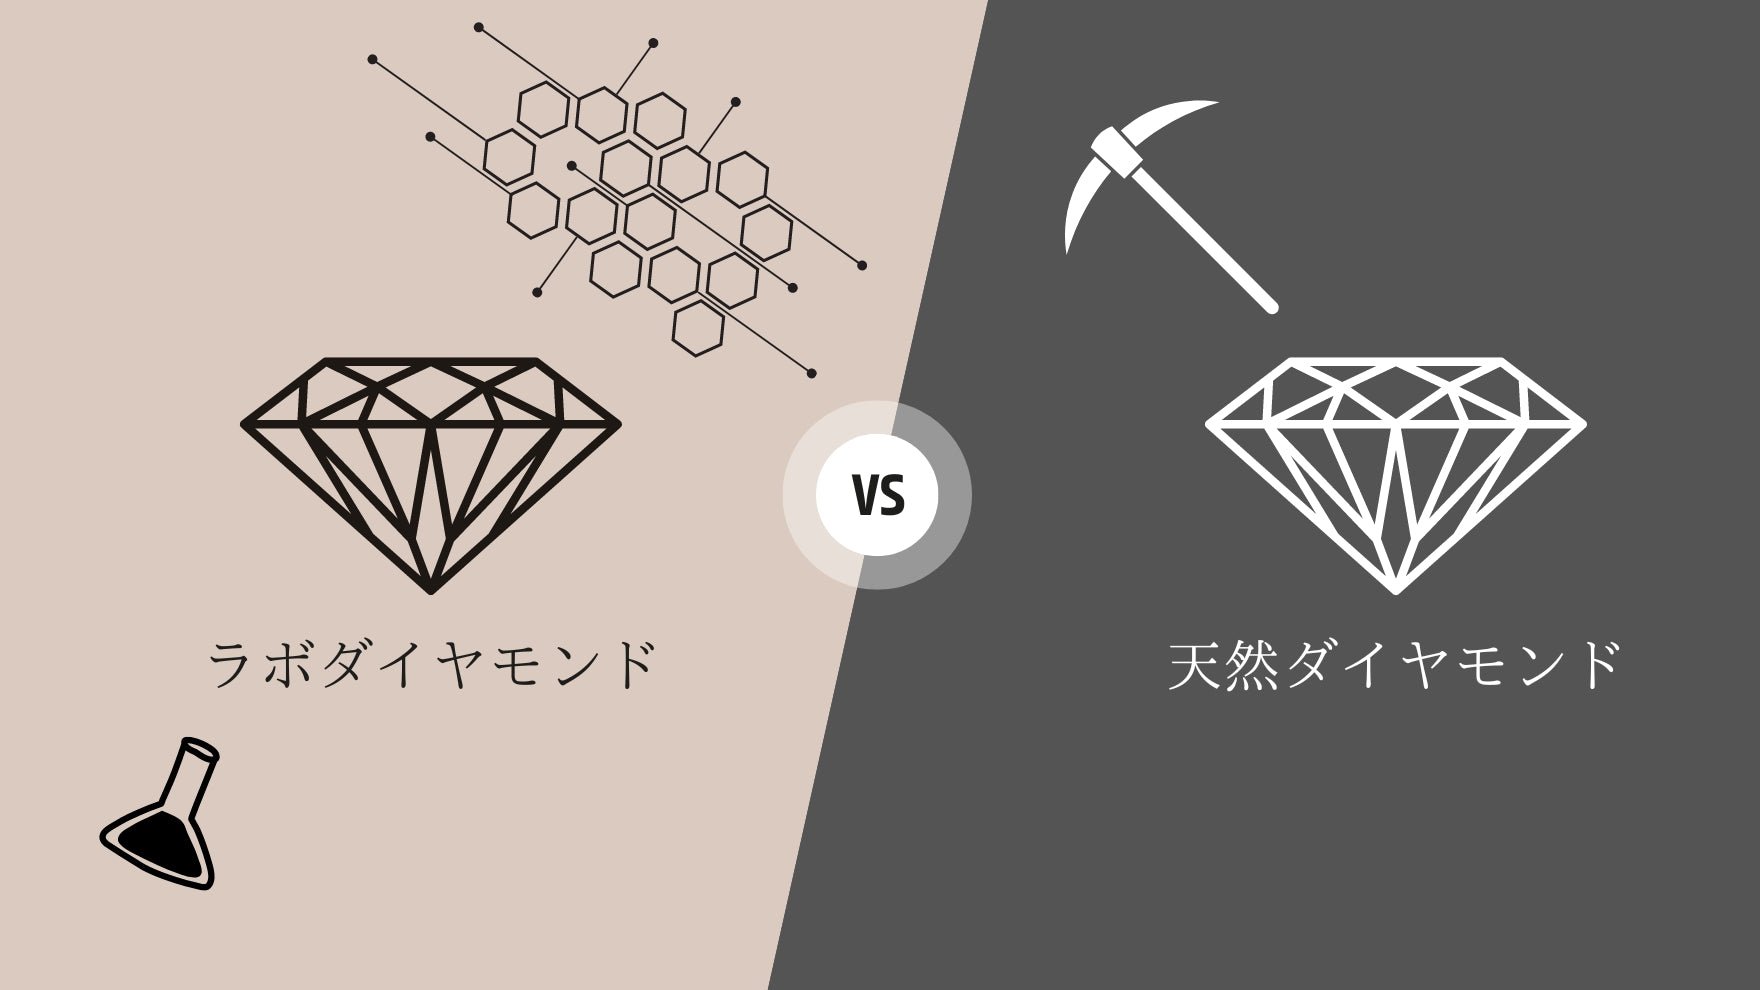 ラボグロウンダイヤ VS 天然ダイヤモンド - aucentic